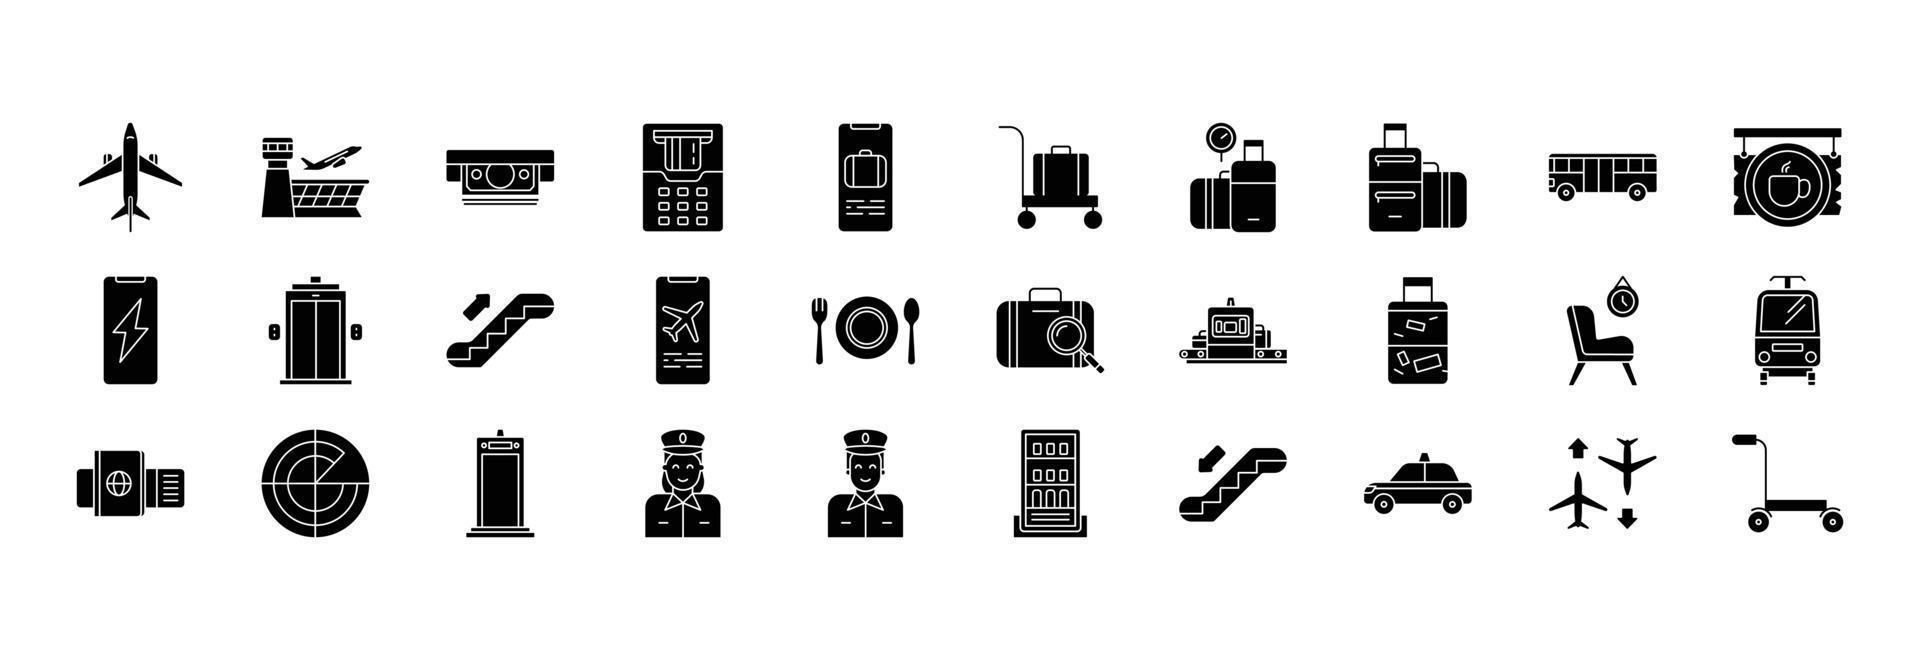 samling av ikoner relaterad till flygplats och flygbolag, Inklusive ikoner tycka om flygplan, bagage, foodcourt, scanner och Mer. vektor illustrationer, pixel perfekt uppsättning